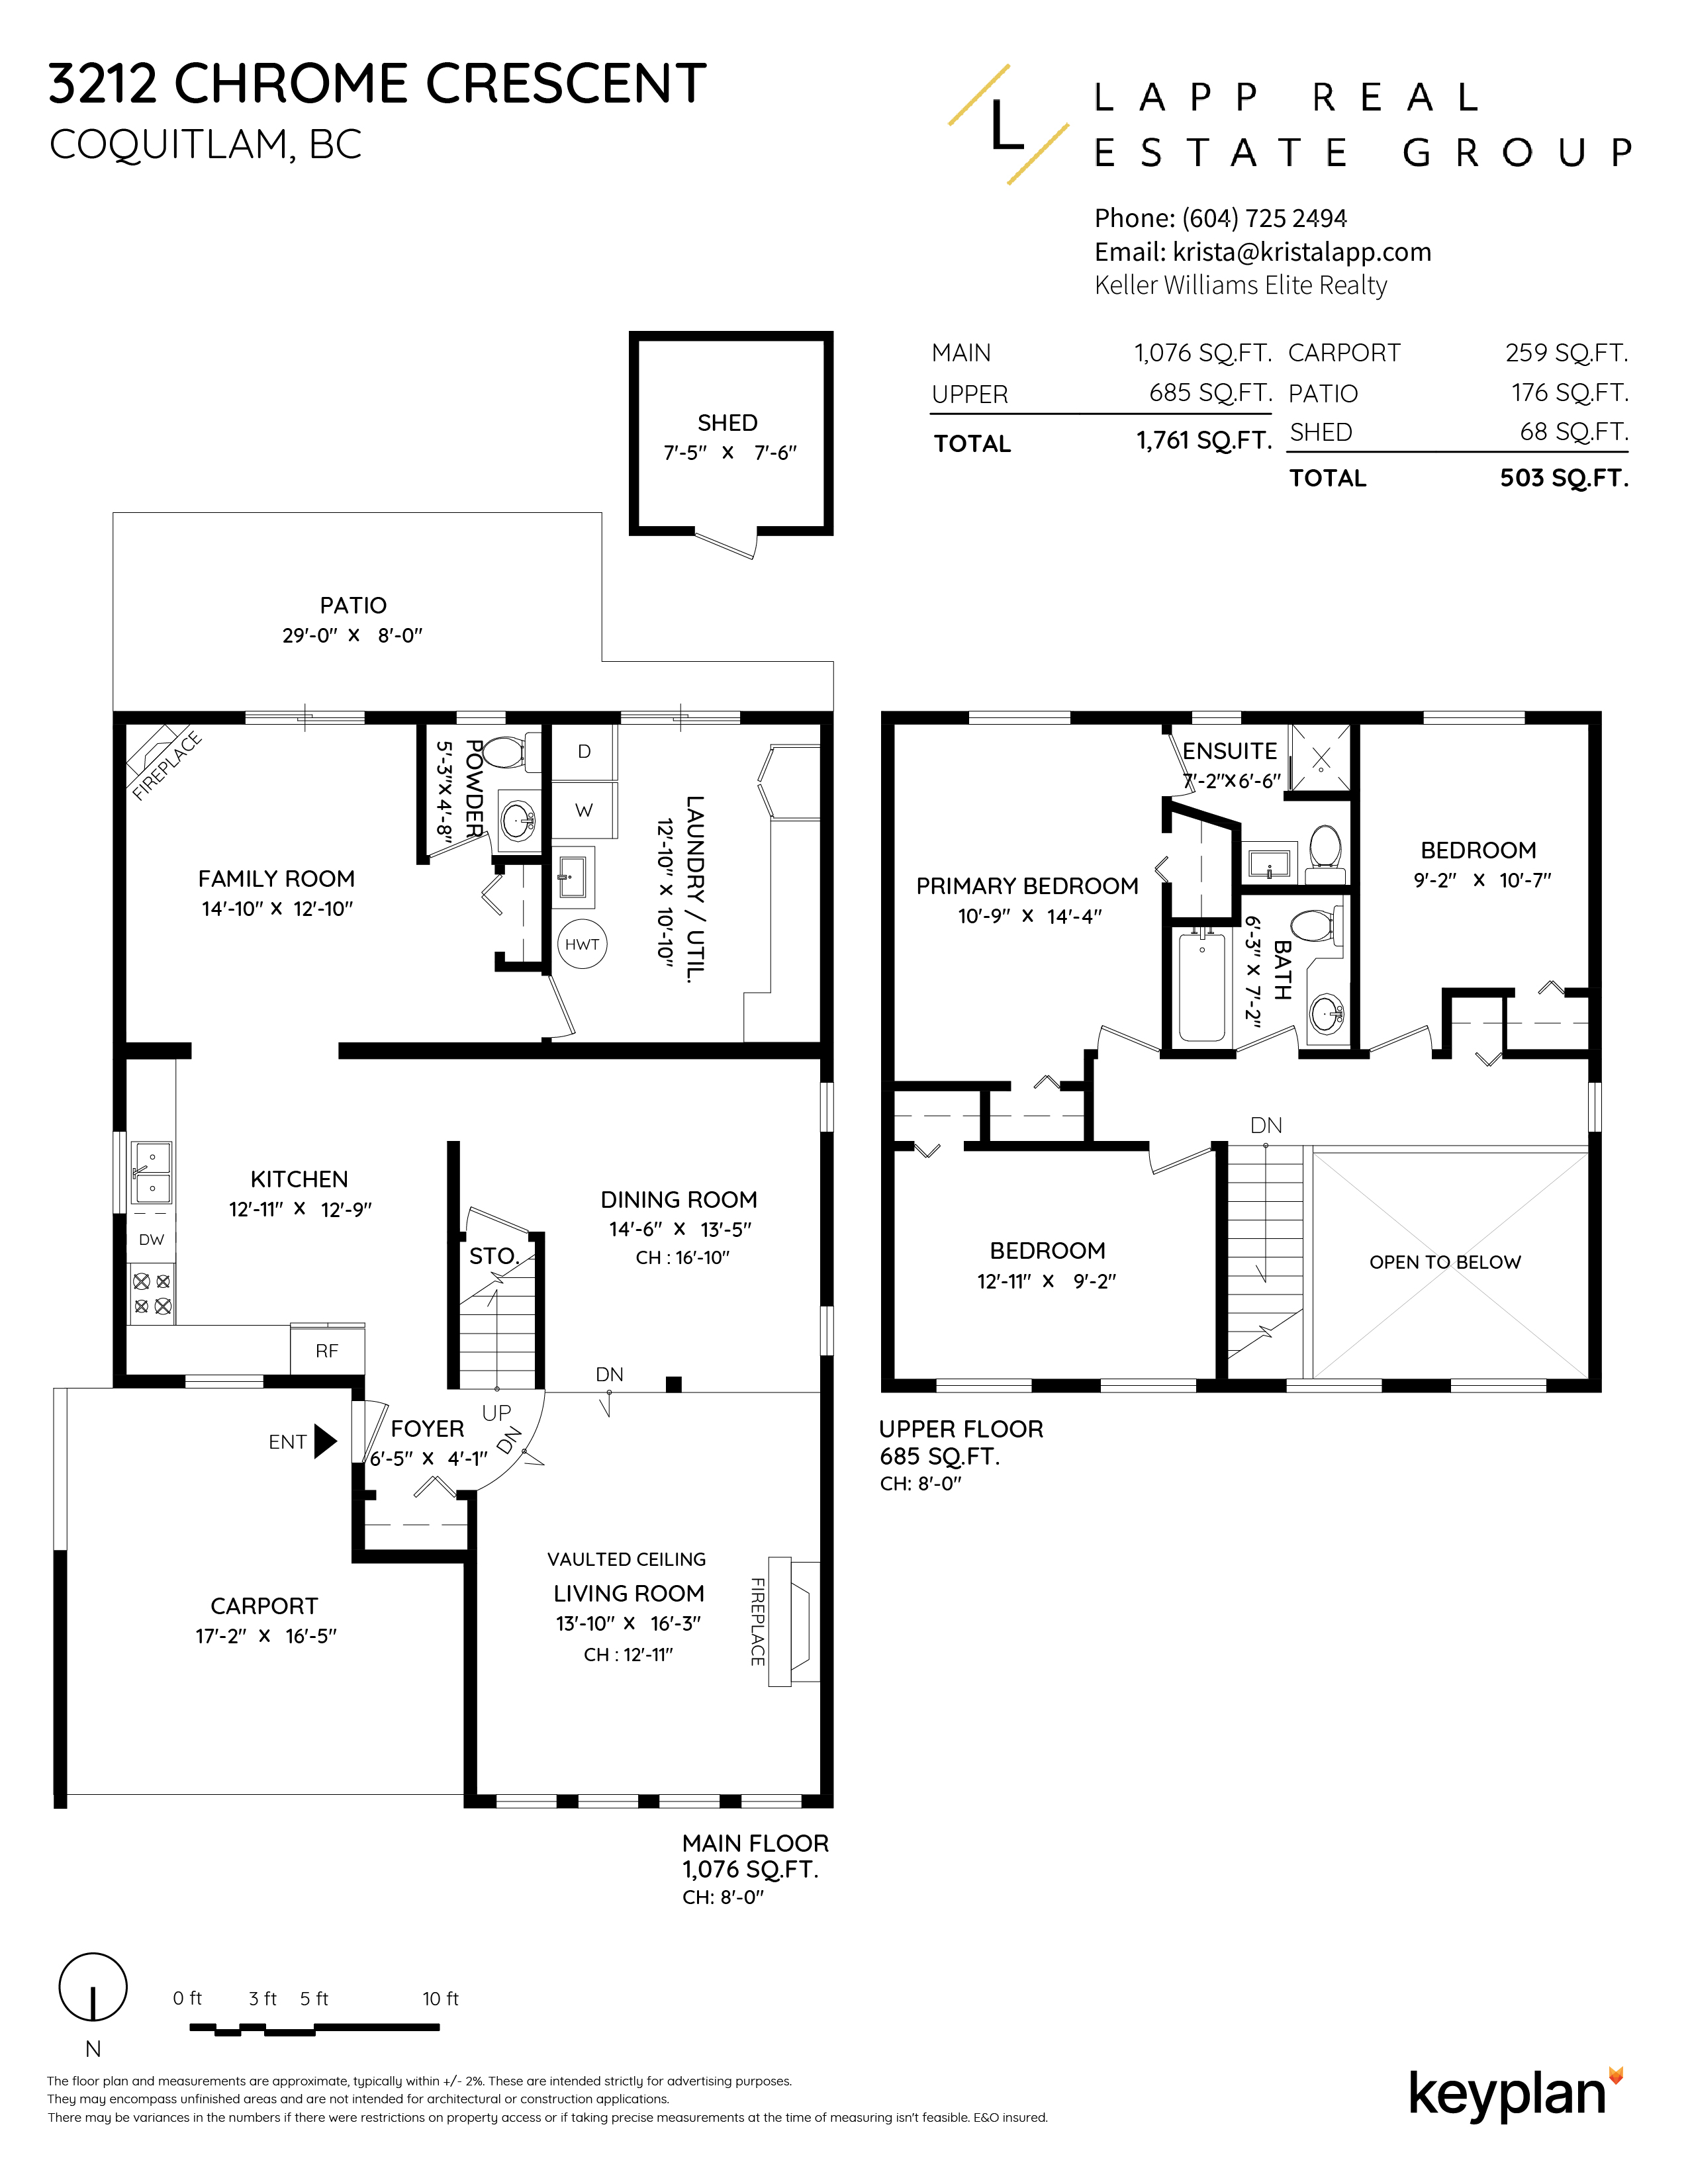 Krista Lapp - 3212 Chrome Crescent, Coquitlam, BC, Canada | Floor Plan 1